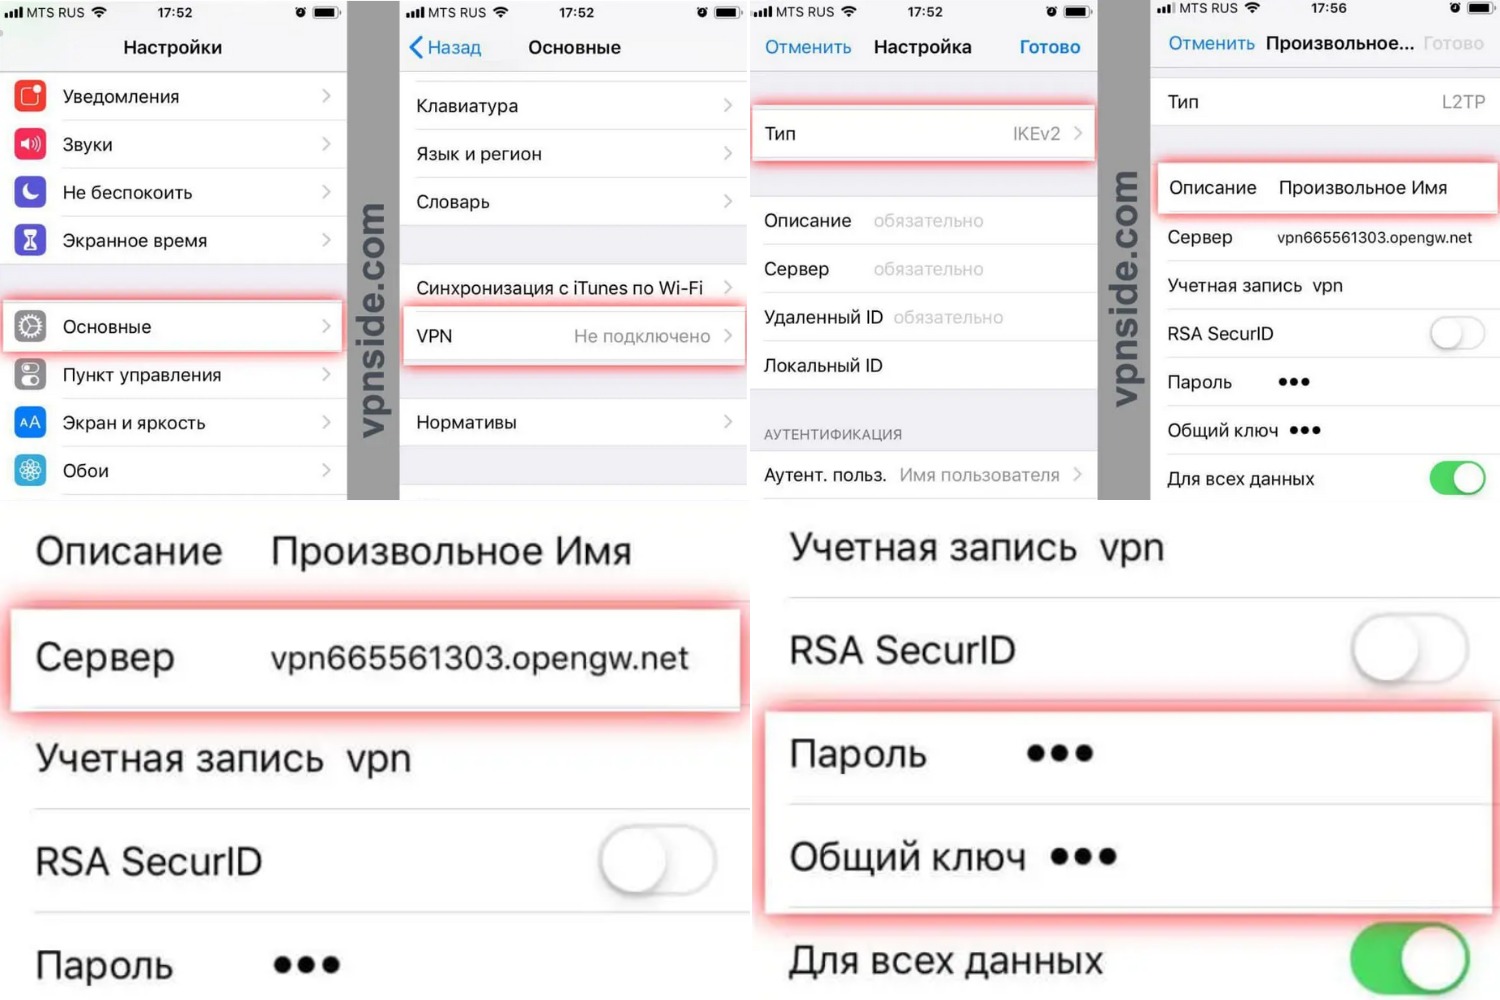 Как настроить телеграмм на русский язык на айфон фото 108